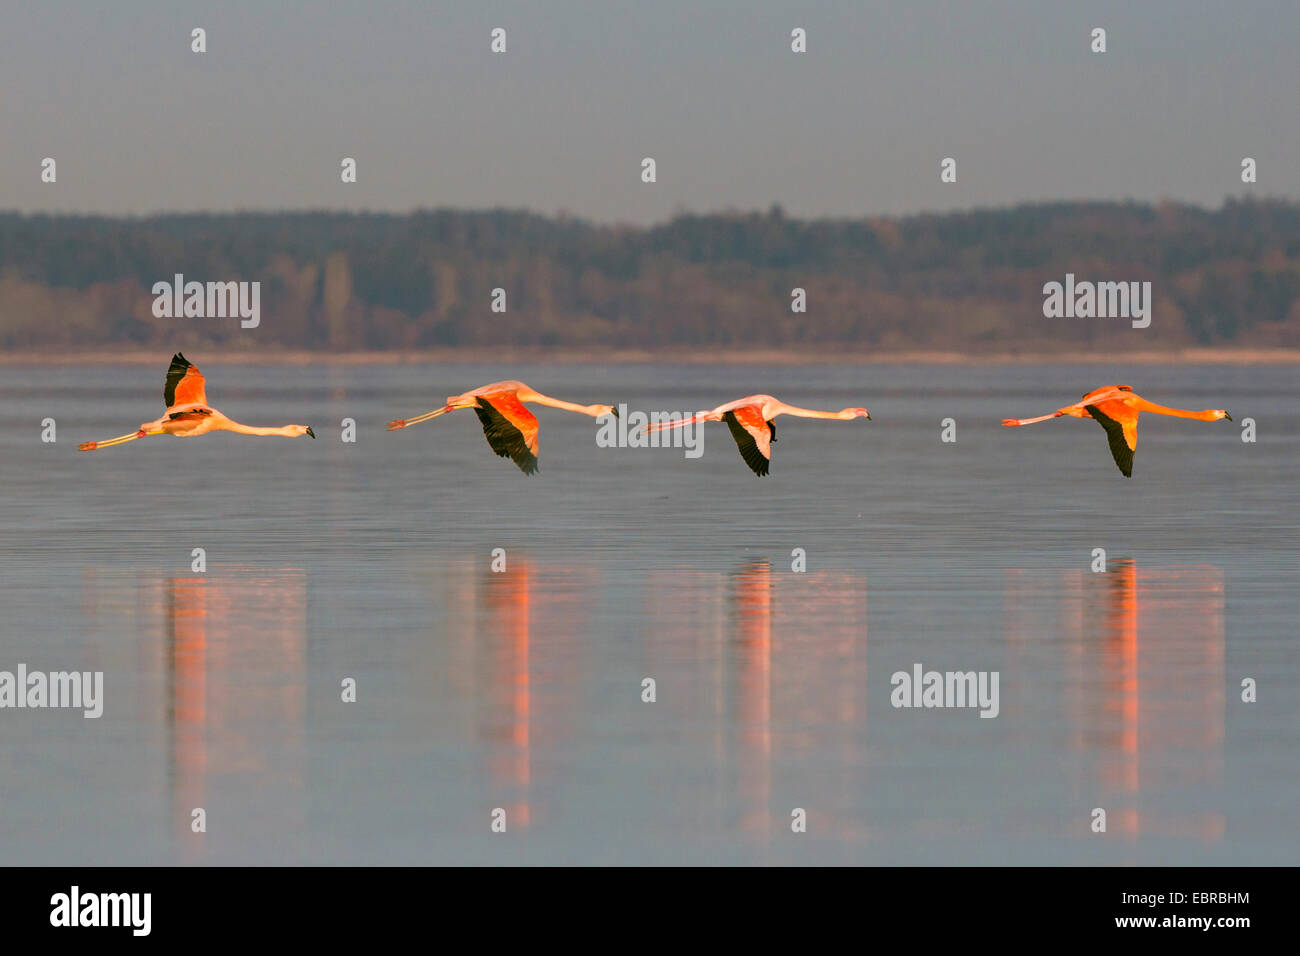 Flamant rose, American flamingo, Caraïbes Flamingo (Phoenicopterus ruber ruber), l''hiver, volant au-dessus d'un lac, l'Allemagne, la Bavière, le lac de Chiemsee Banque D'Images